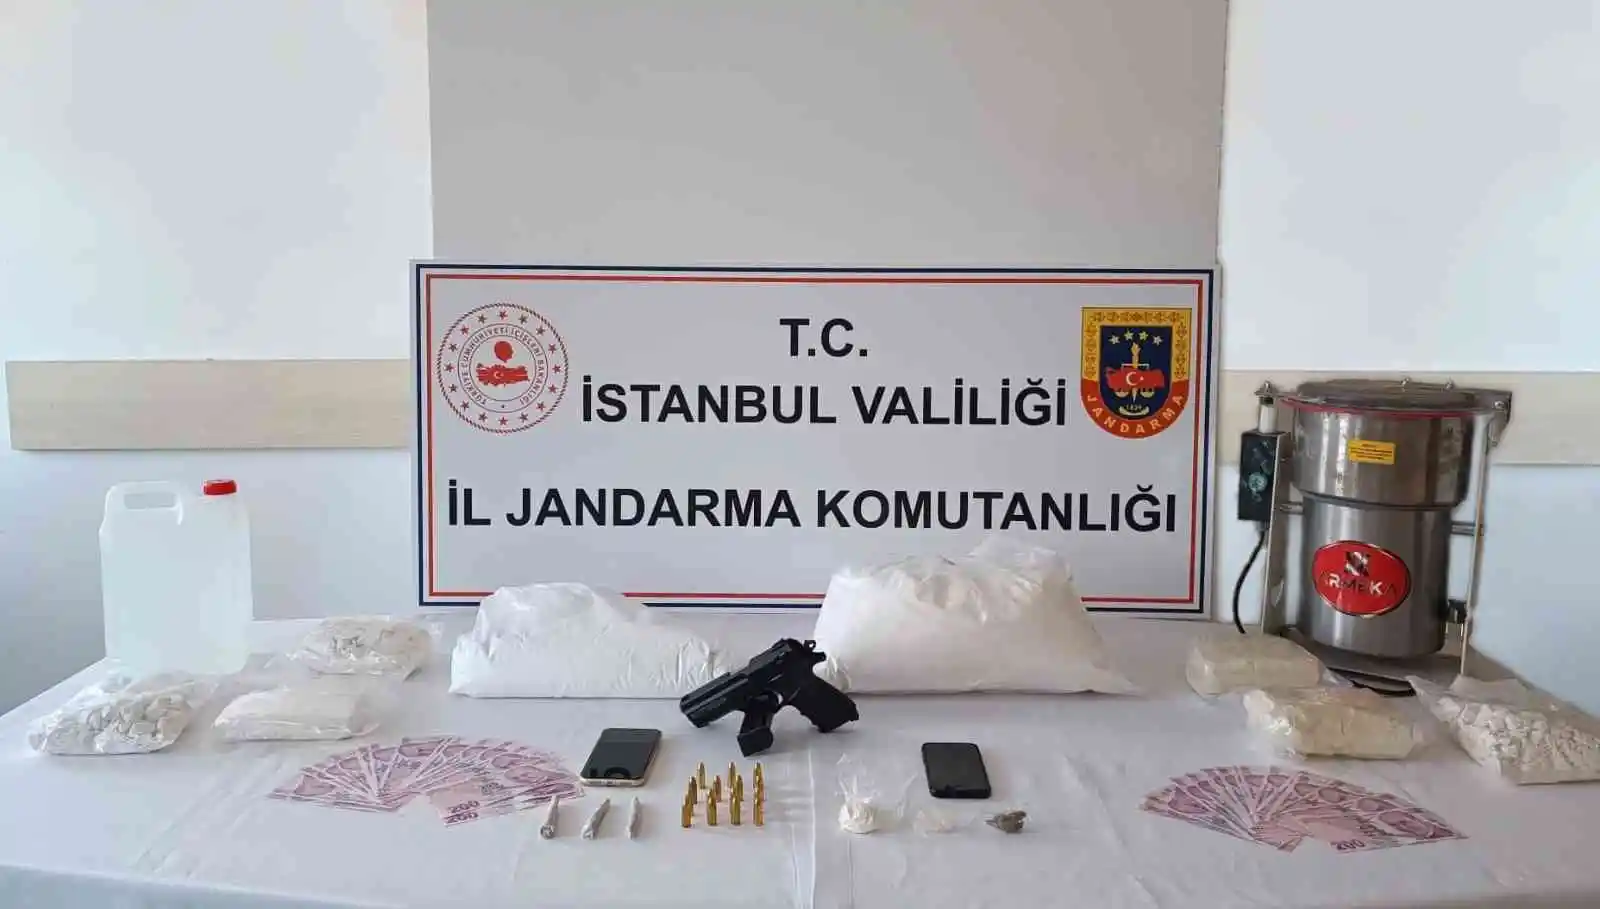 İstanbul’da uyuşturucu operasyonu: 44 kilogram uyuşturucu ele geçirildi
